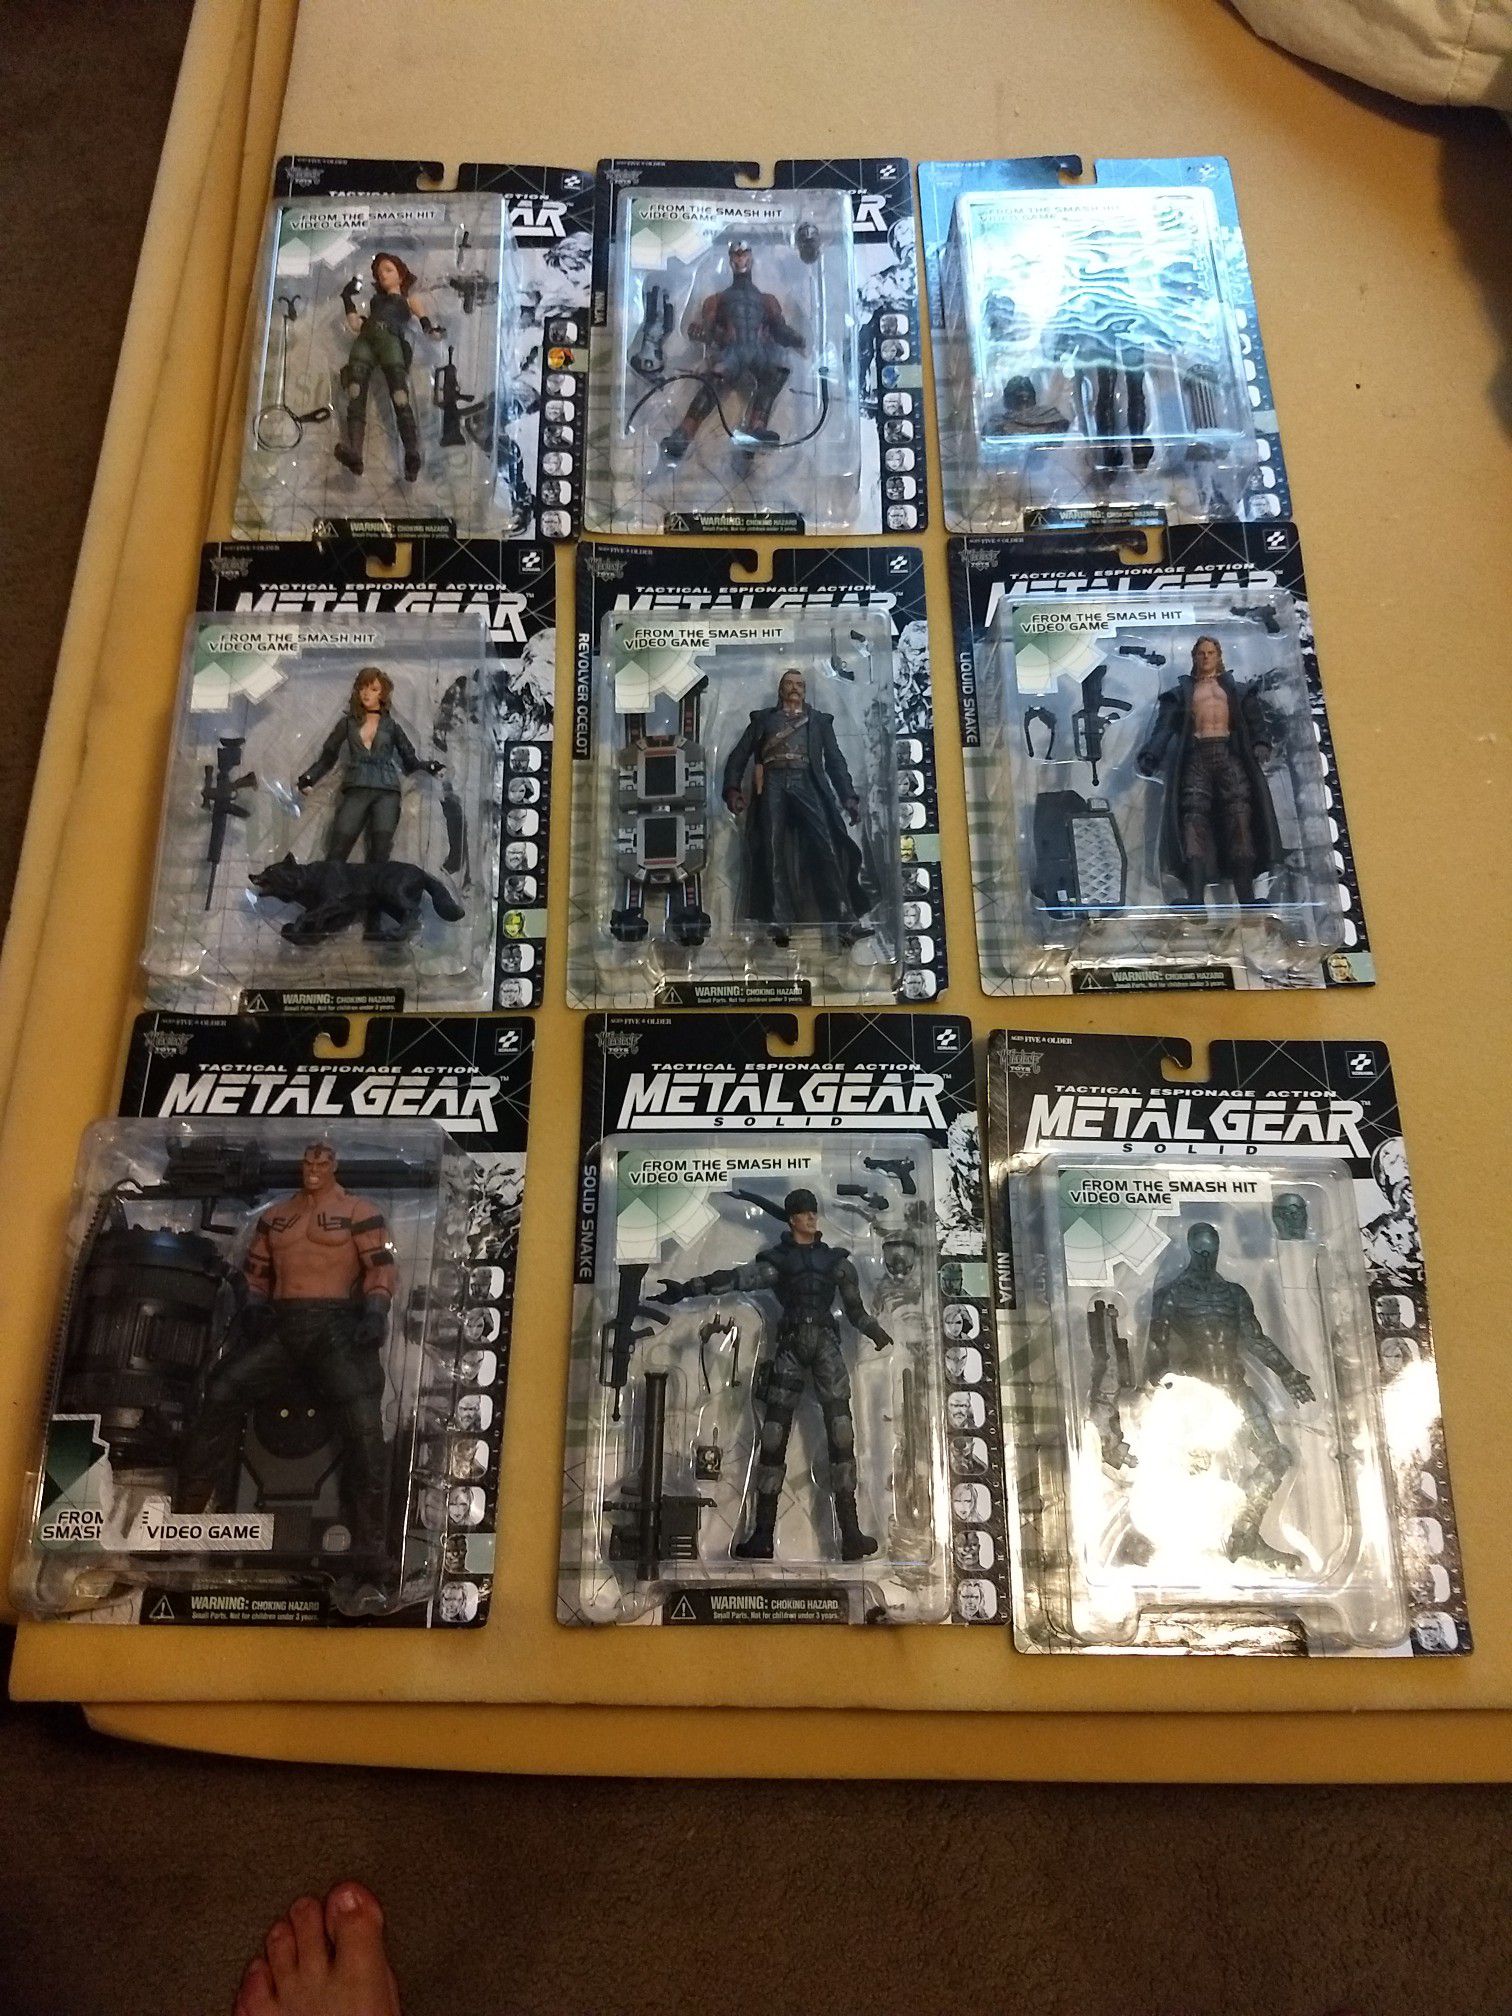 Metal Gear Solid action figures